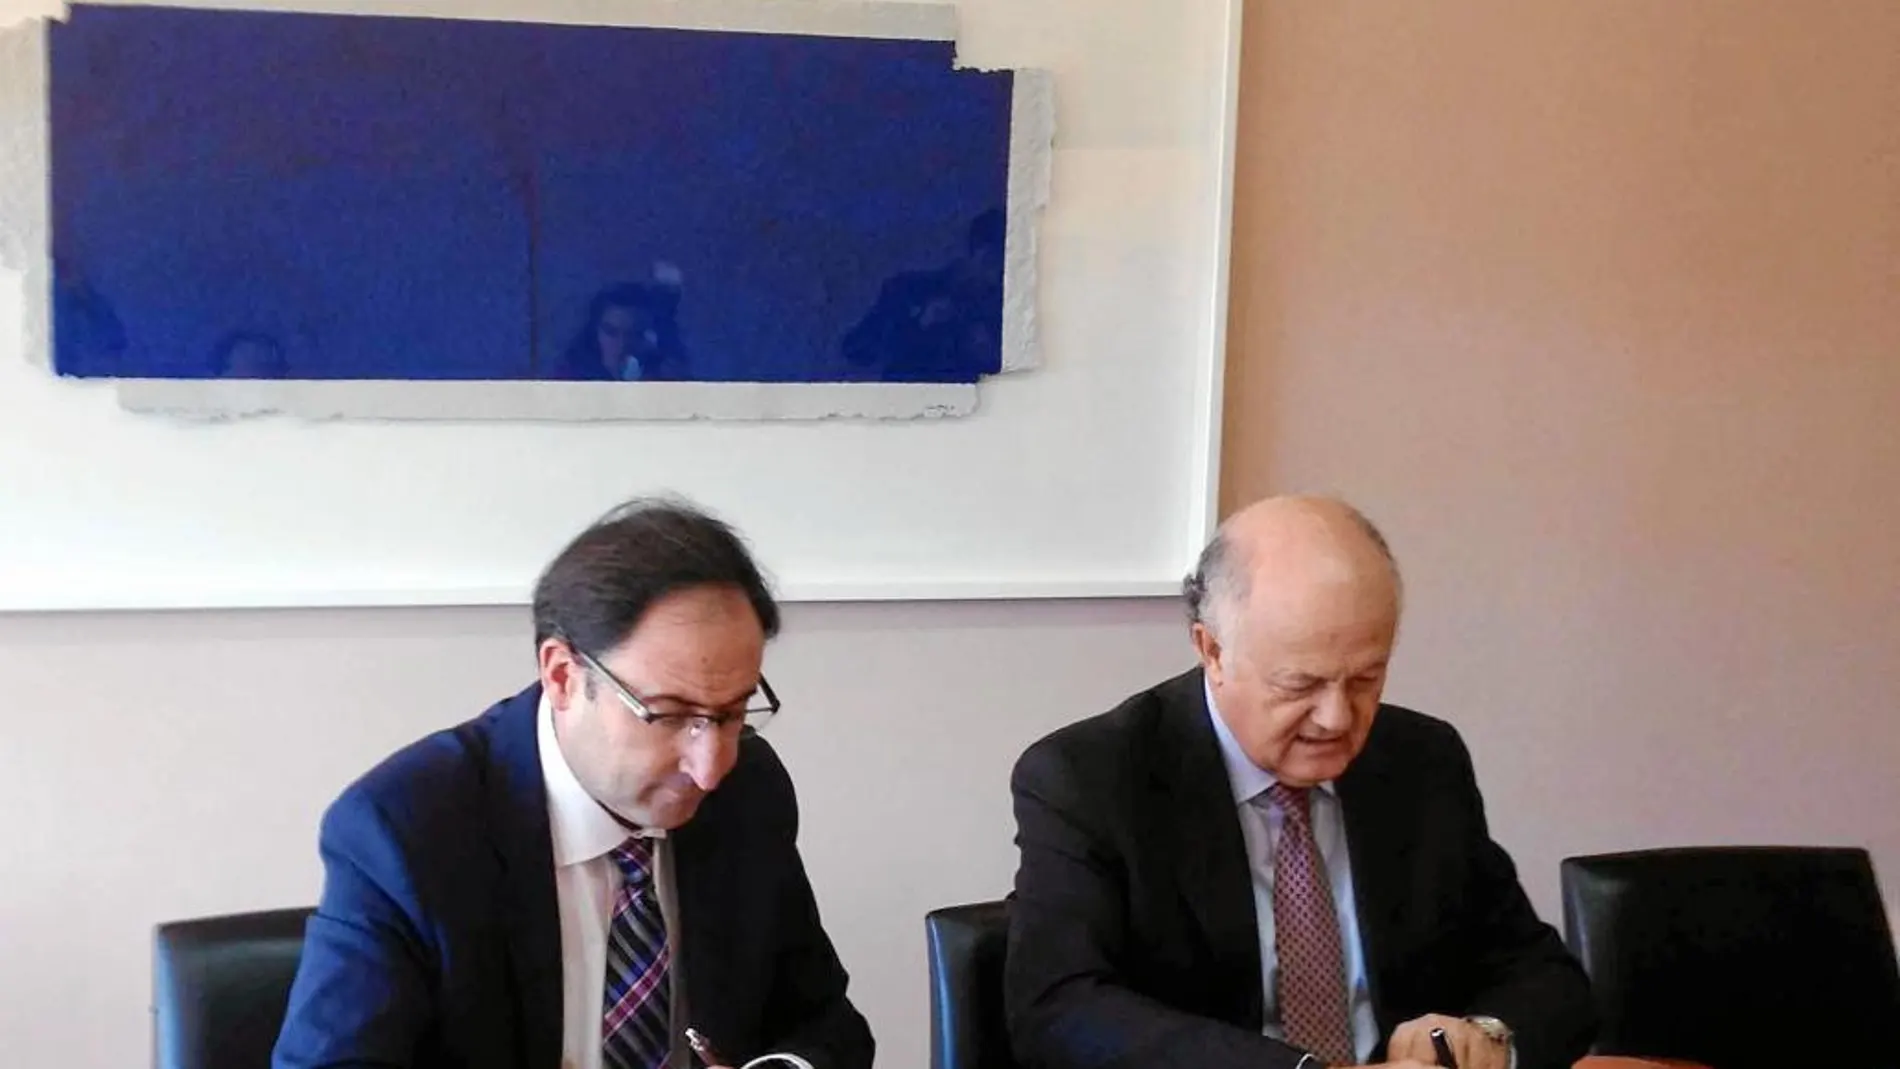 El alcalde de Palencia, Alfonso Polanco, y el presidente de la Real Fundación de Toledo, Juan Ignacio de Mesa, suscriben un convenio de colaboración